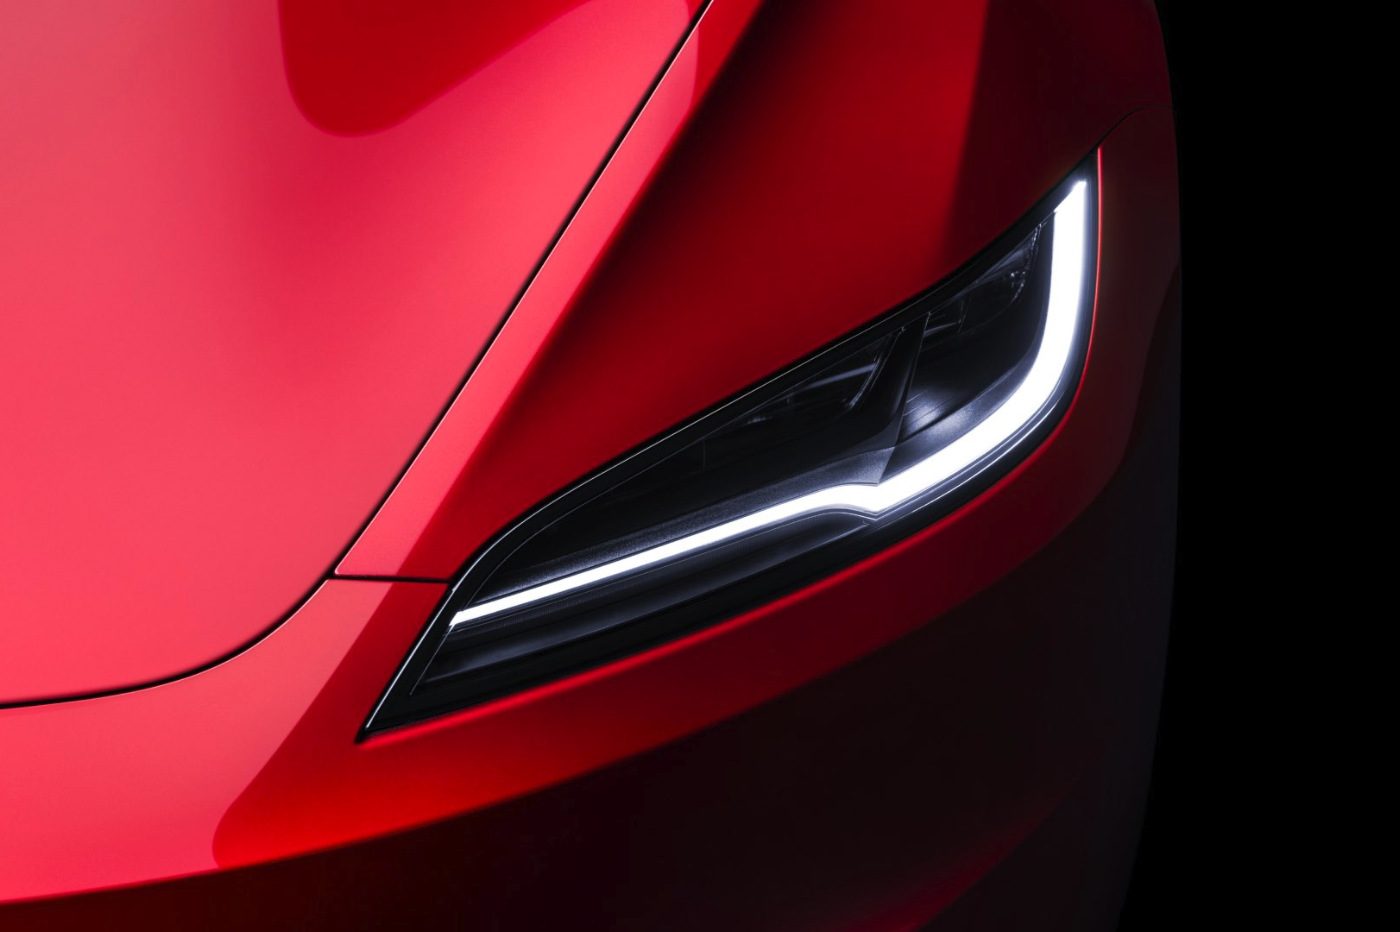 La Tesla Model 3 Grande Autonomie (634 km) est chez Glinche Automobiles 